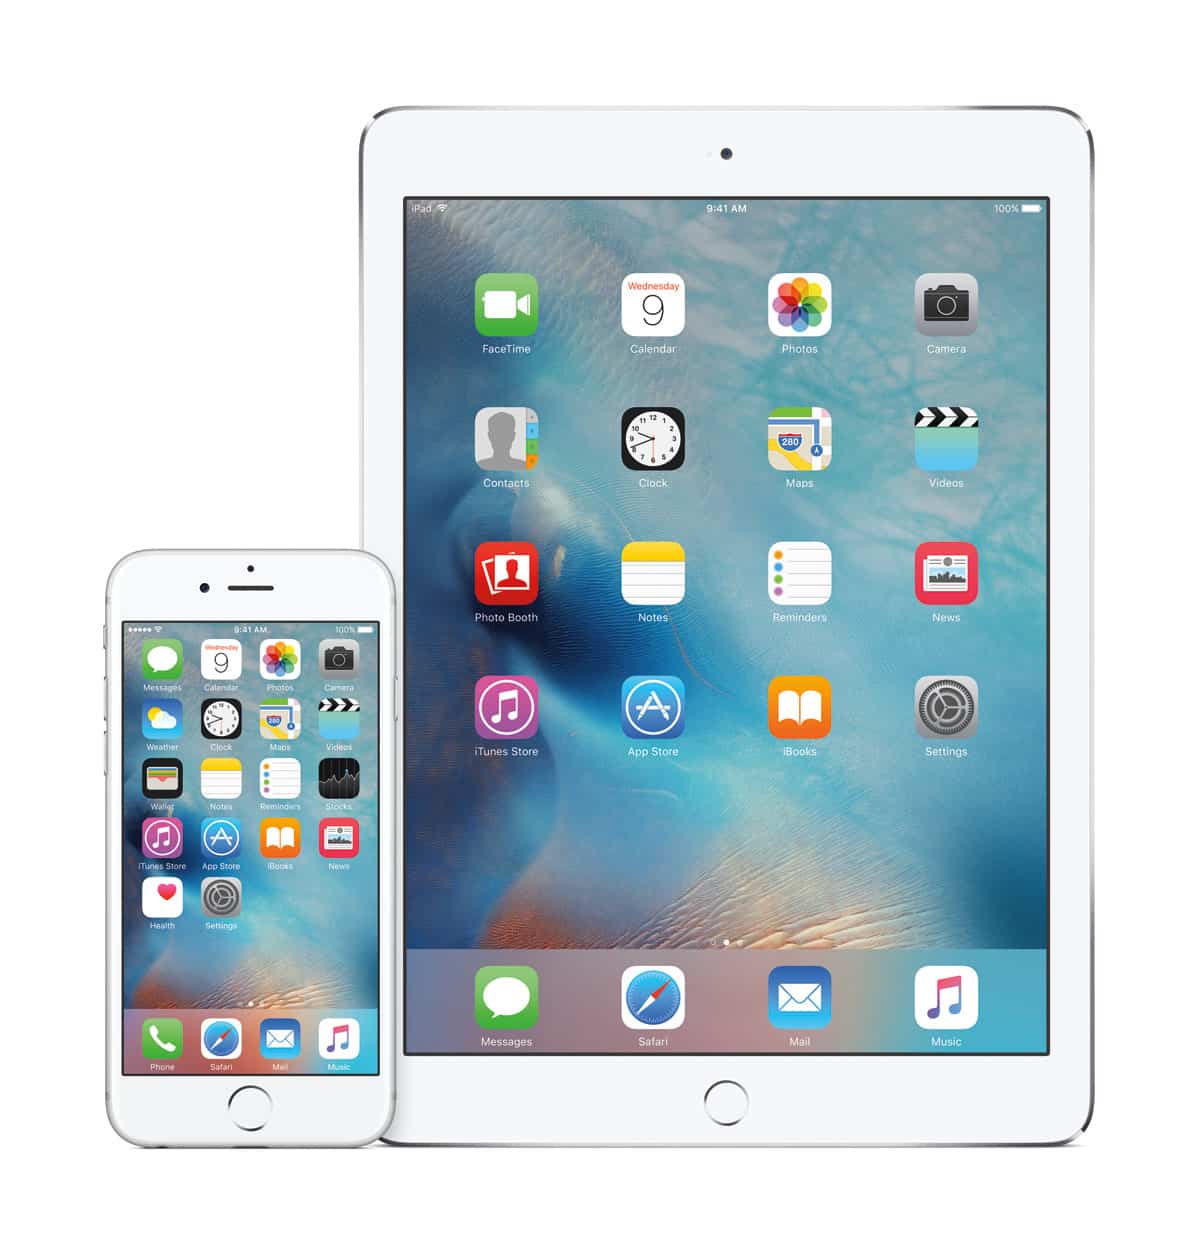 Novedades del iOS 9, el nuevo sistema operativo para iPhone, iPad y iPod touch